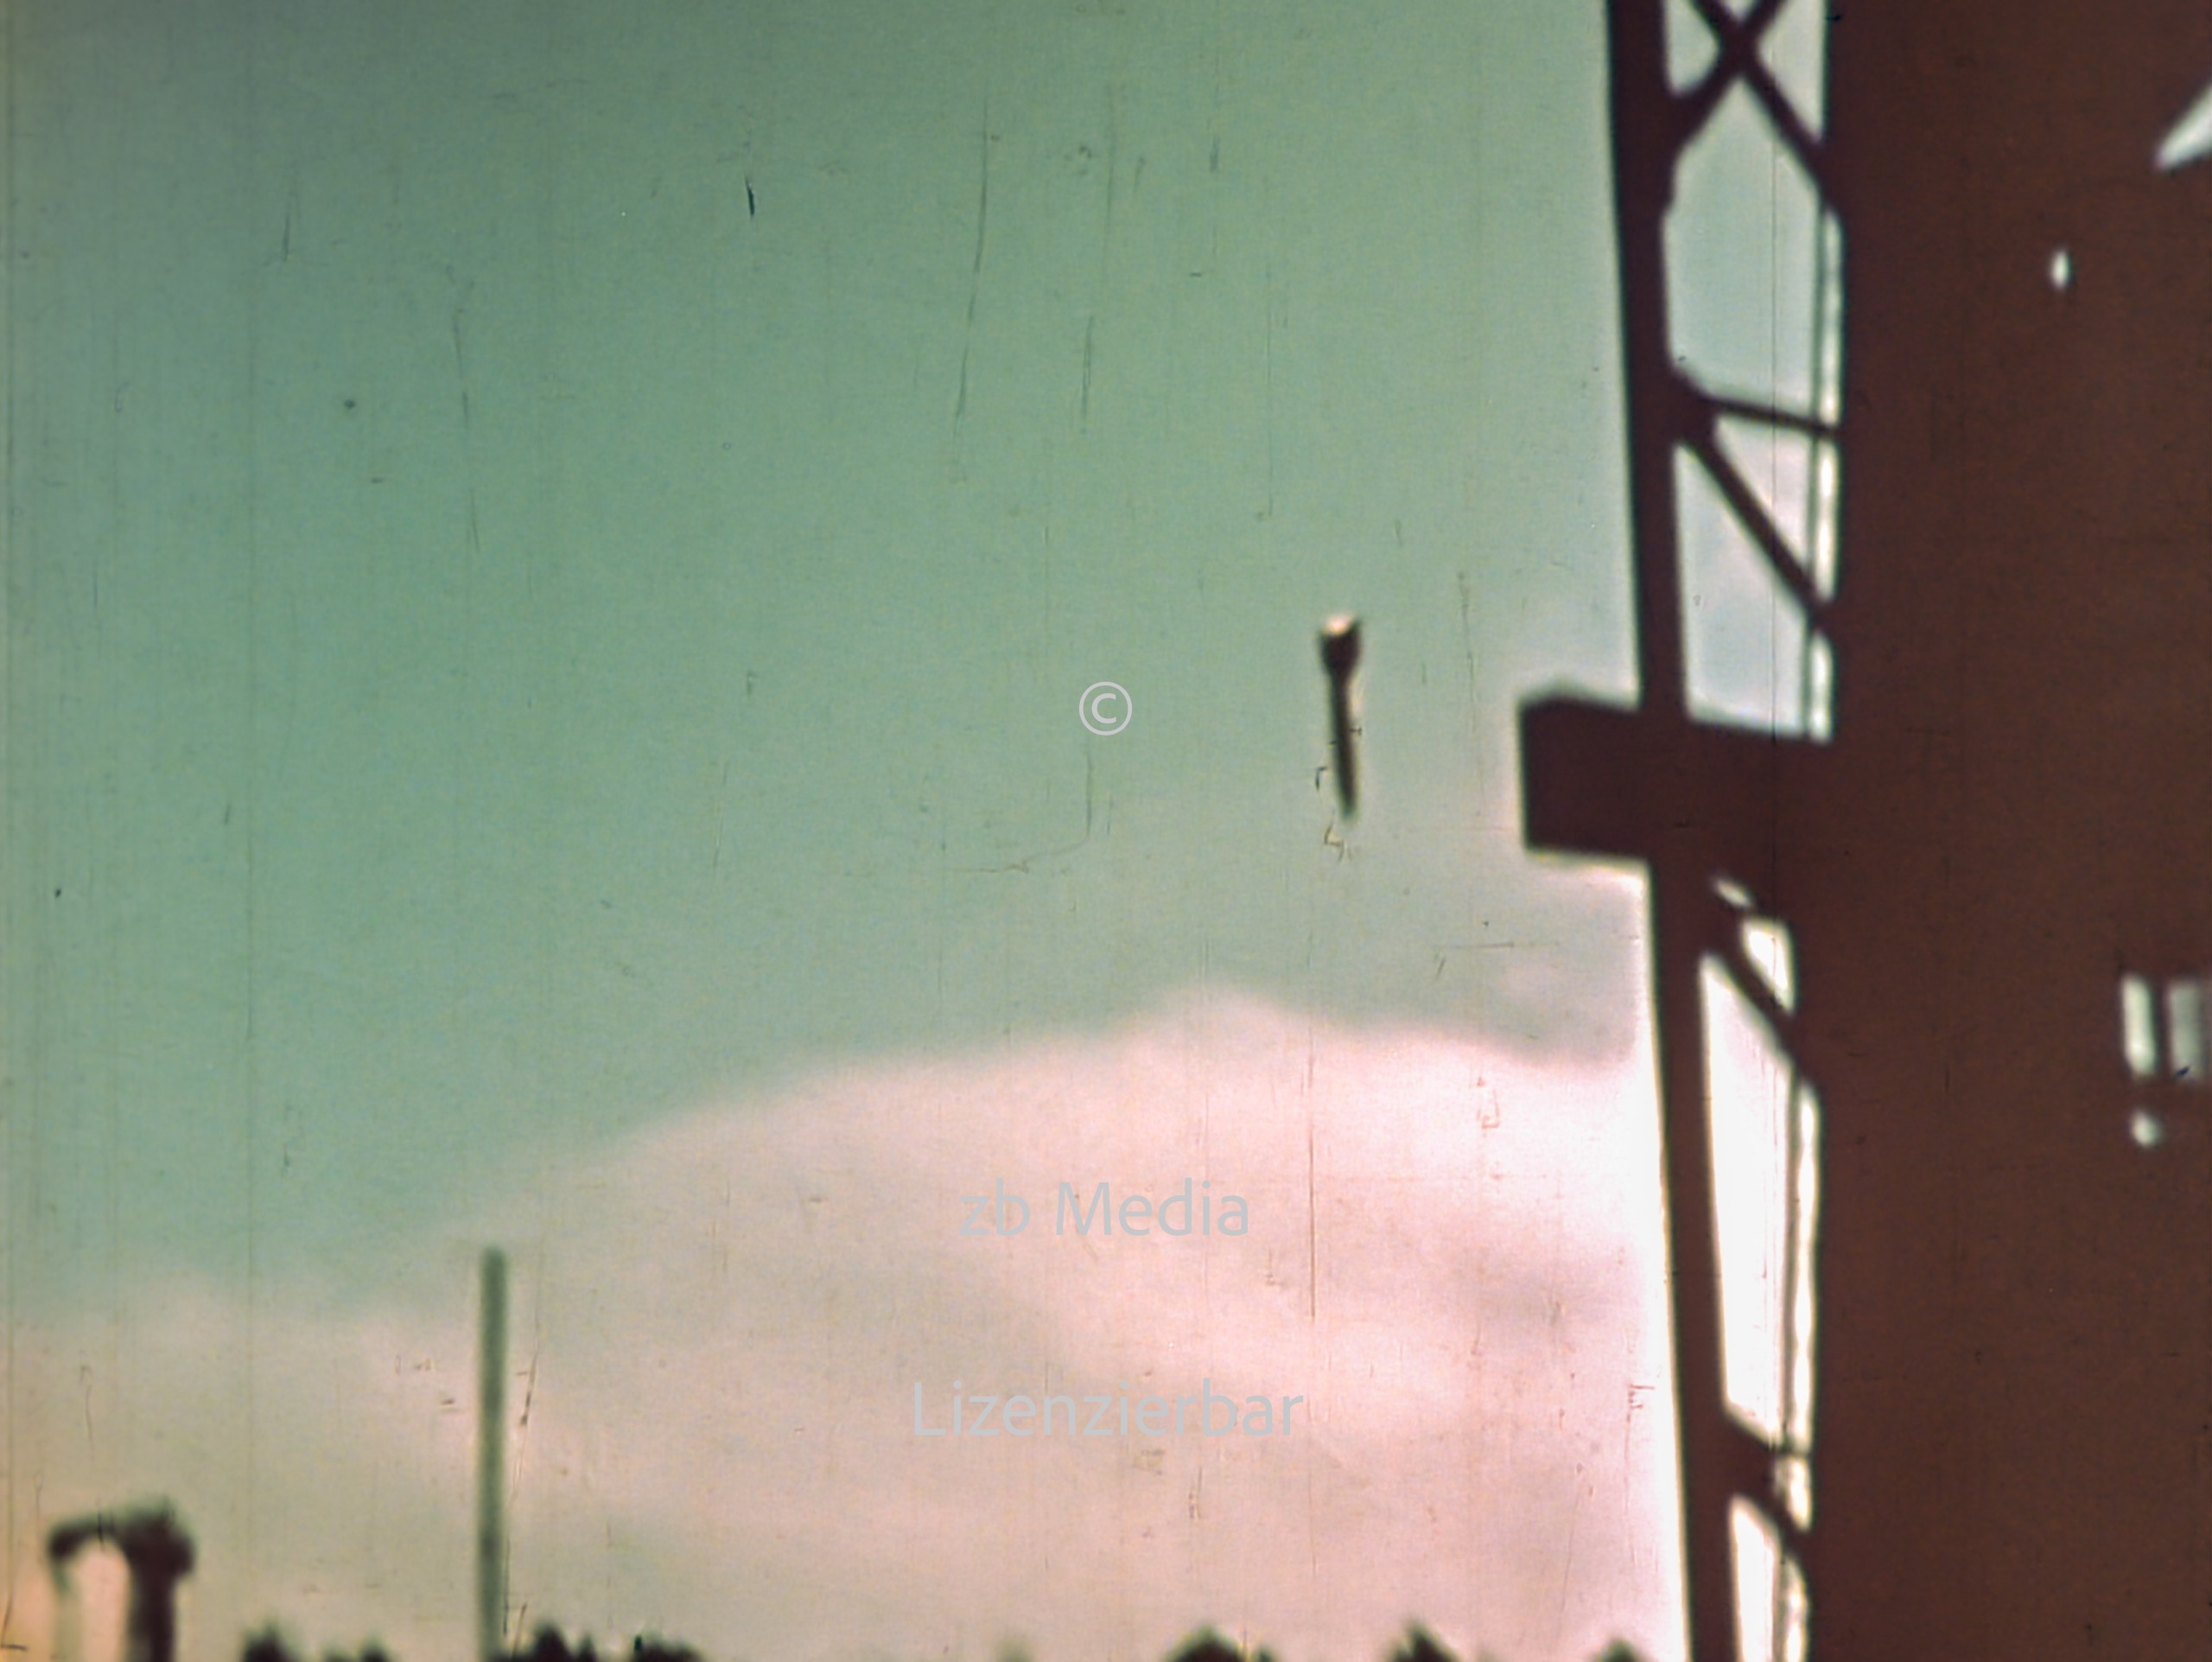 V2 Rakete Peenemünde 1944